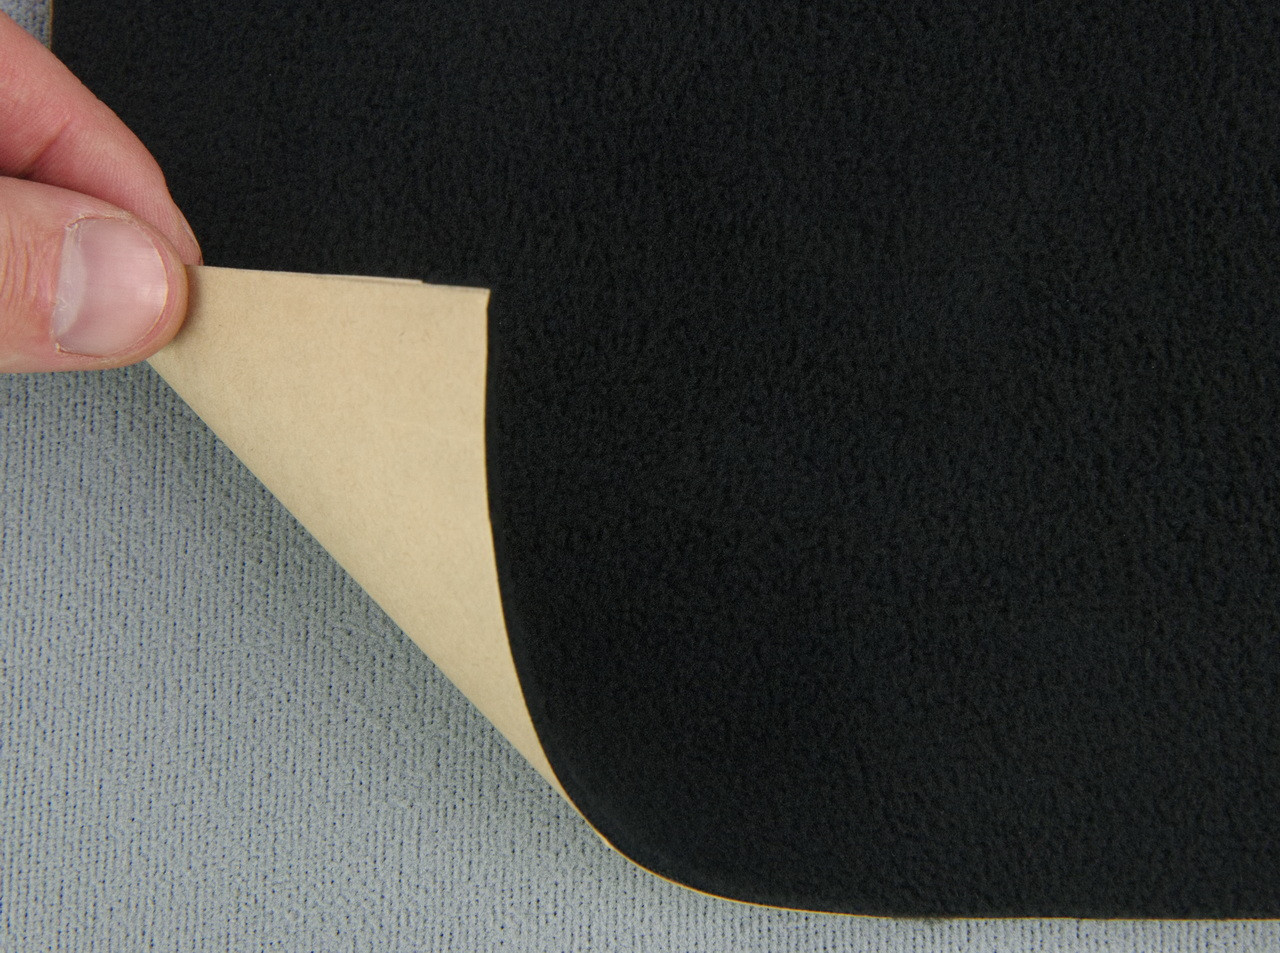 Карпет-самоклейка Standart велюровий чорний, для авто, товщина 2мм, щільність 220г/м2, лист 180х100см